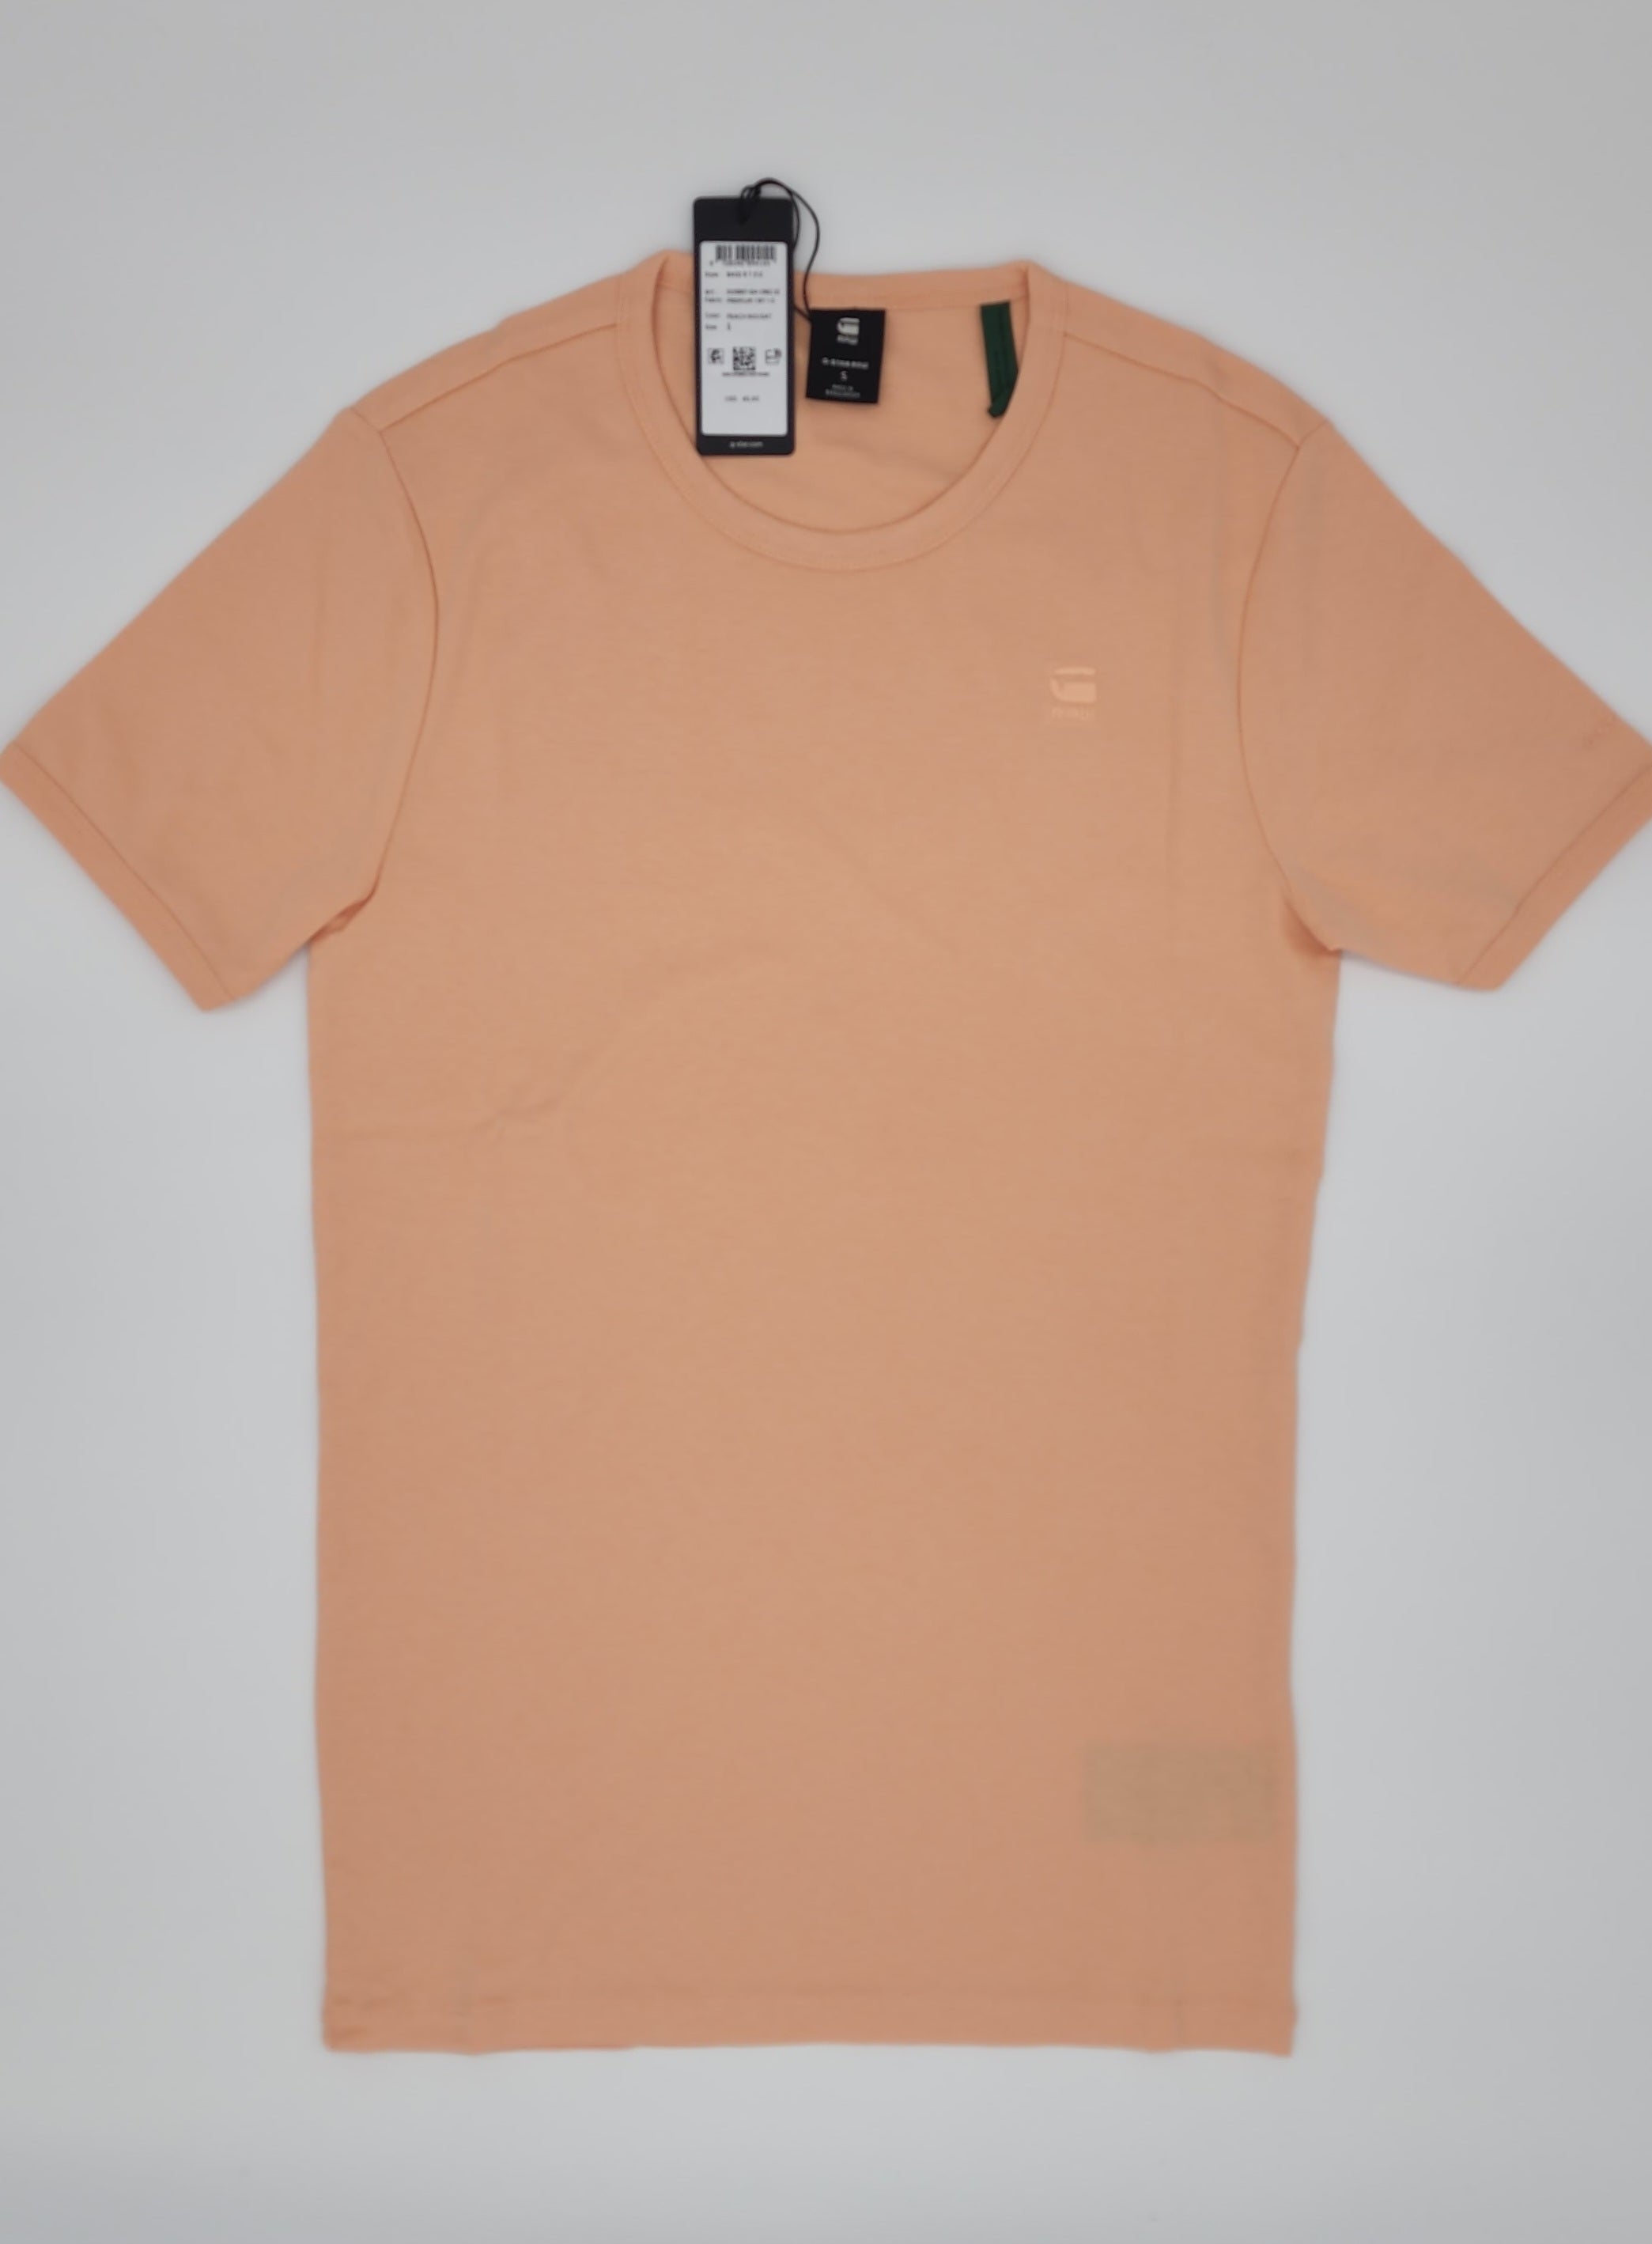 Gstar Basic T-Shirt (Peach Nougat)